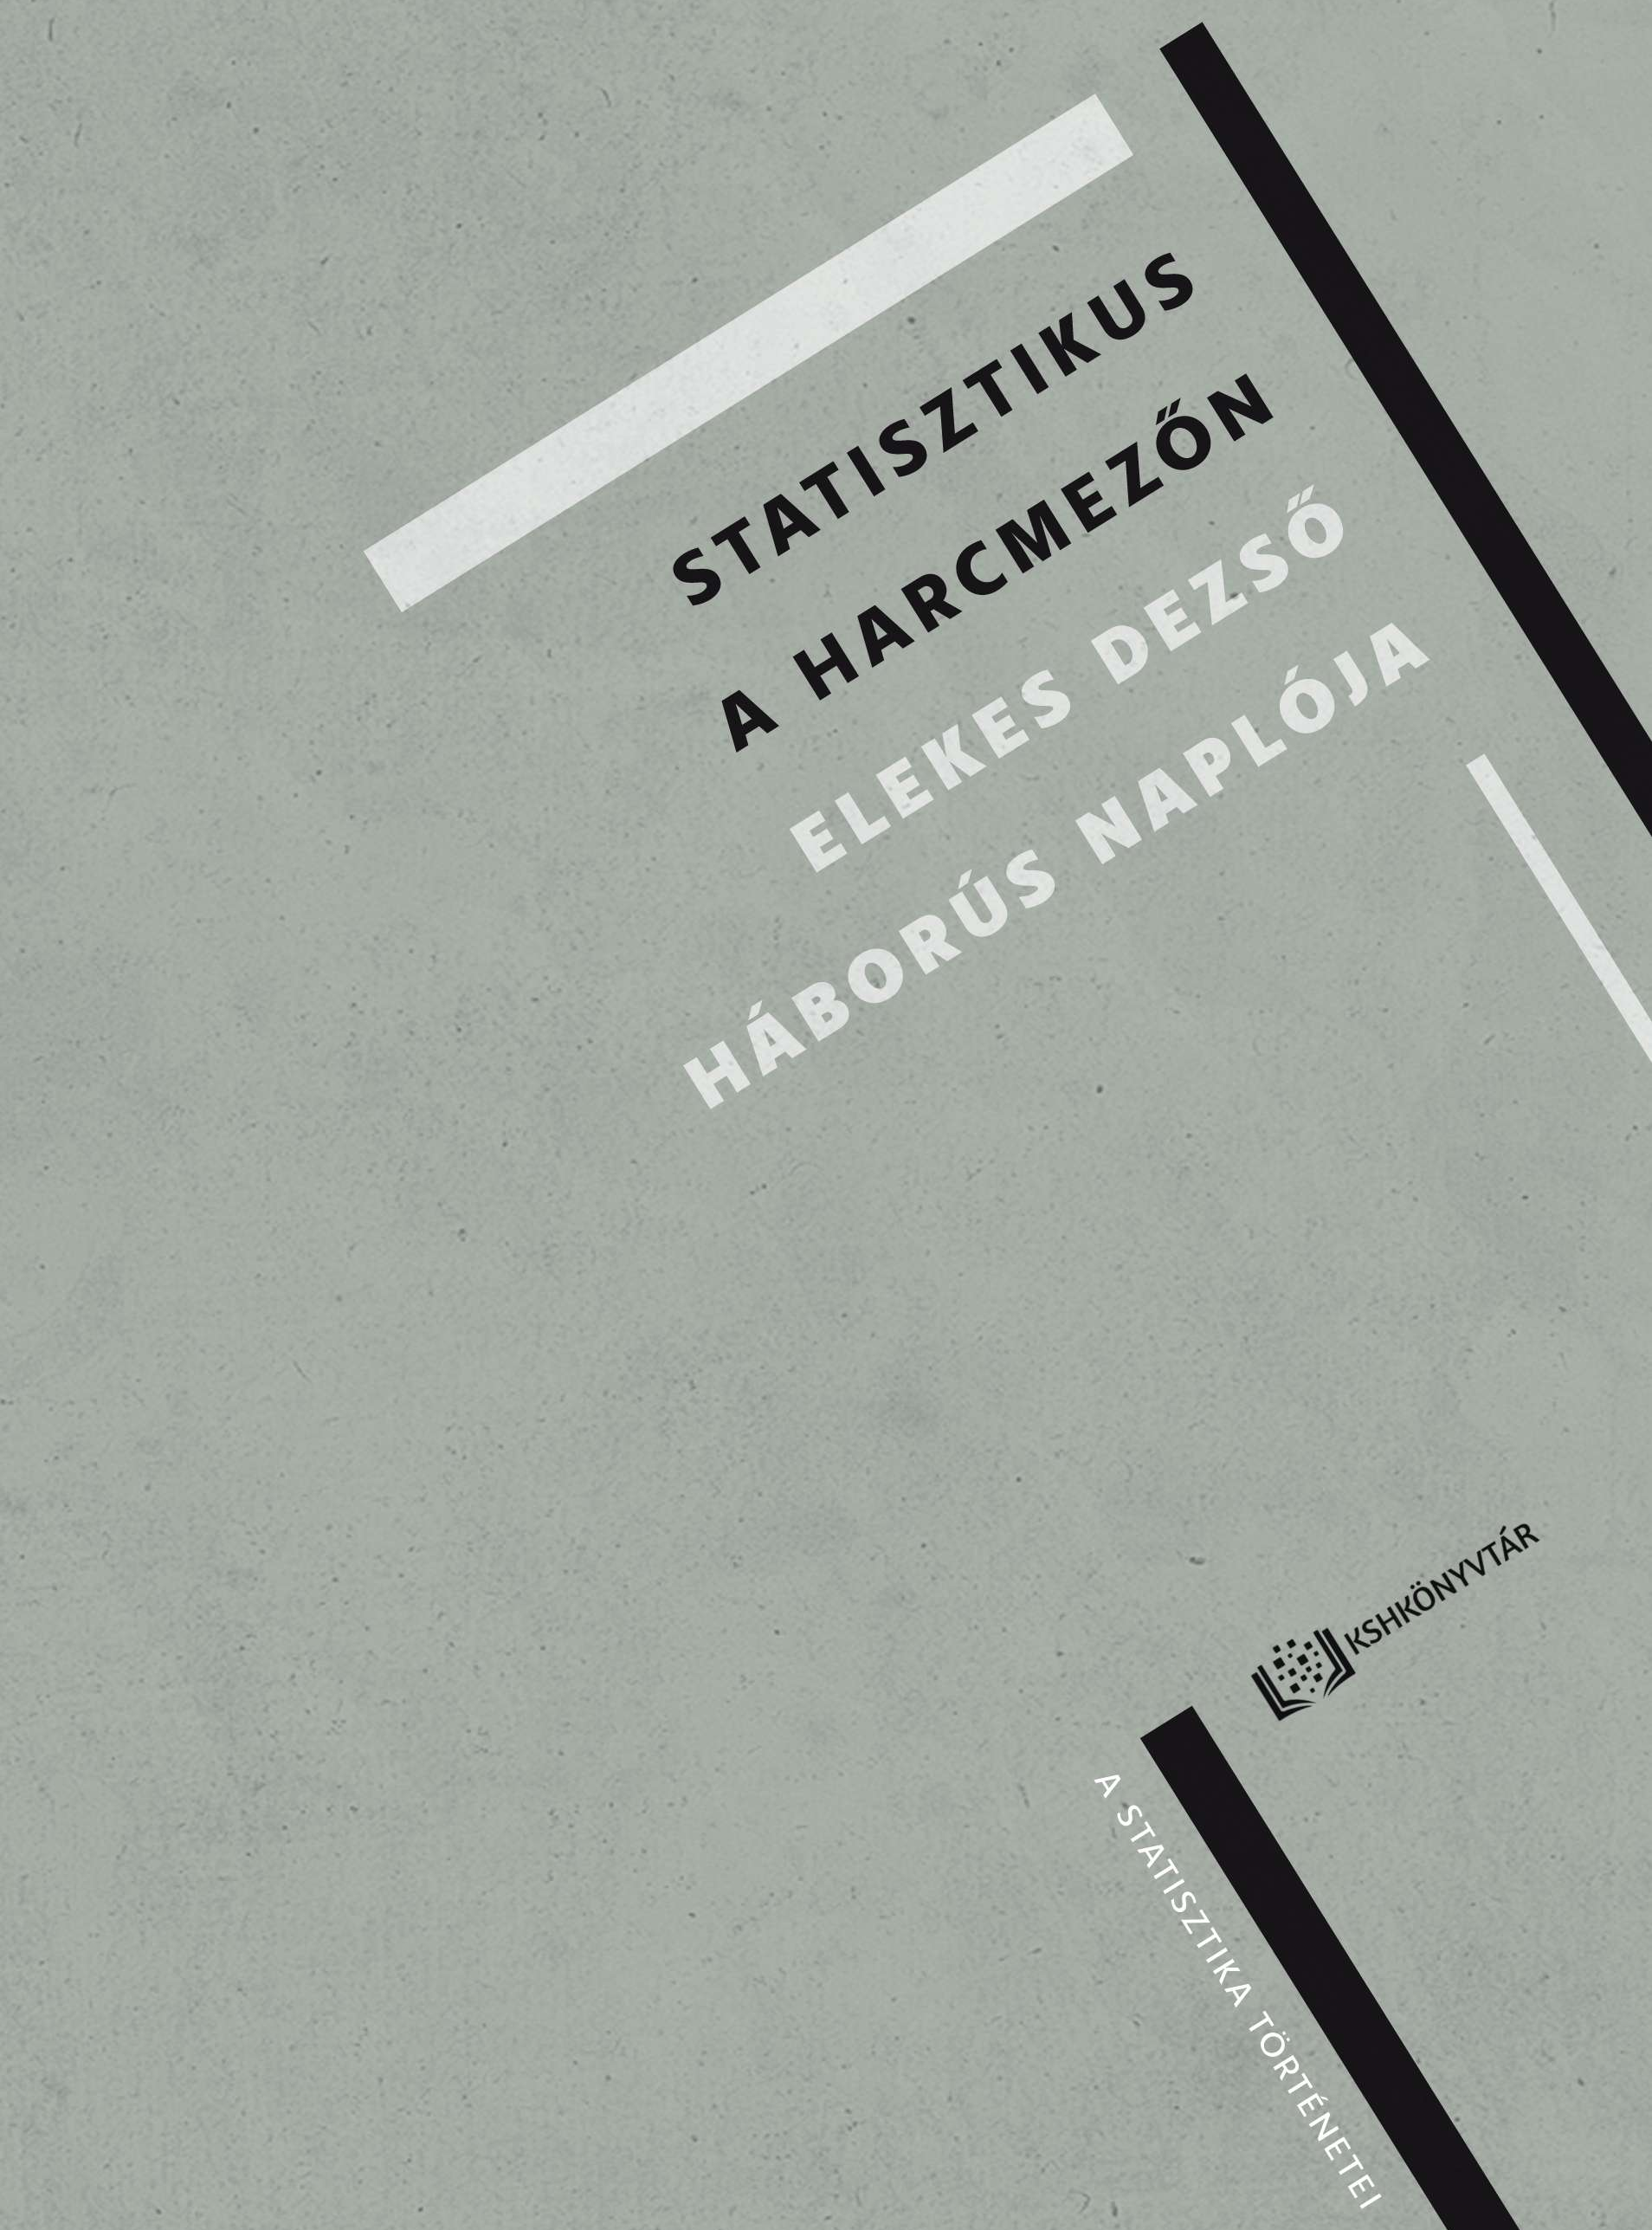 Derzsy Márk, Kovács Csaba (szerk.): Statisztikus a harcmezőn. Elekes Dezső háborús naplója című könyvének megjelentetése